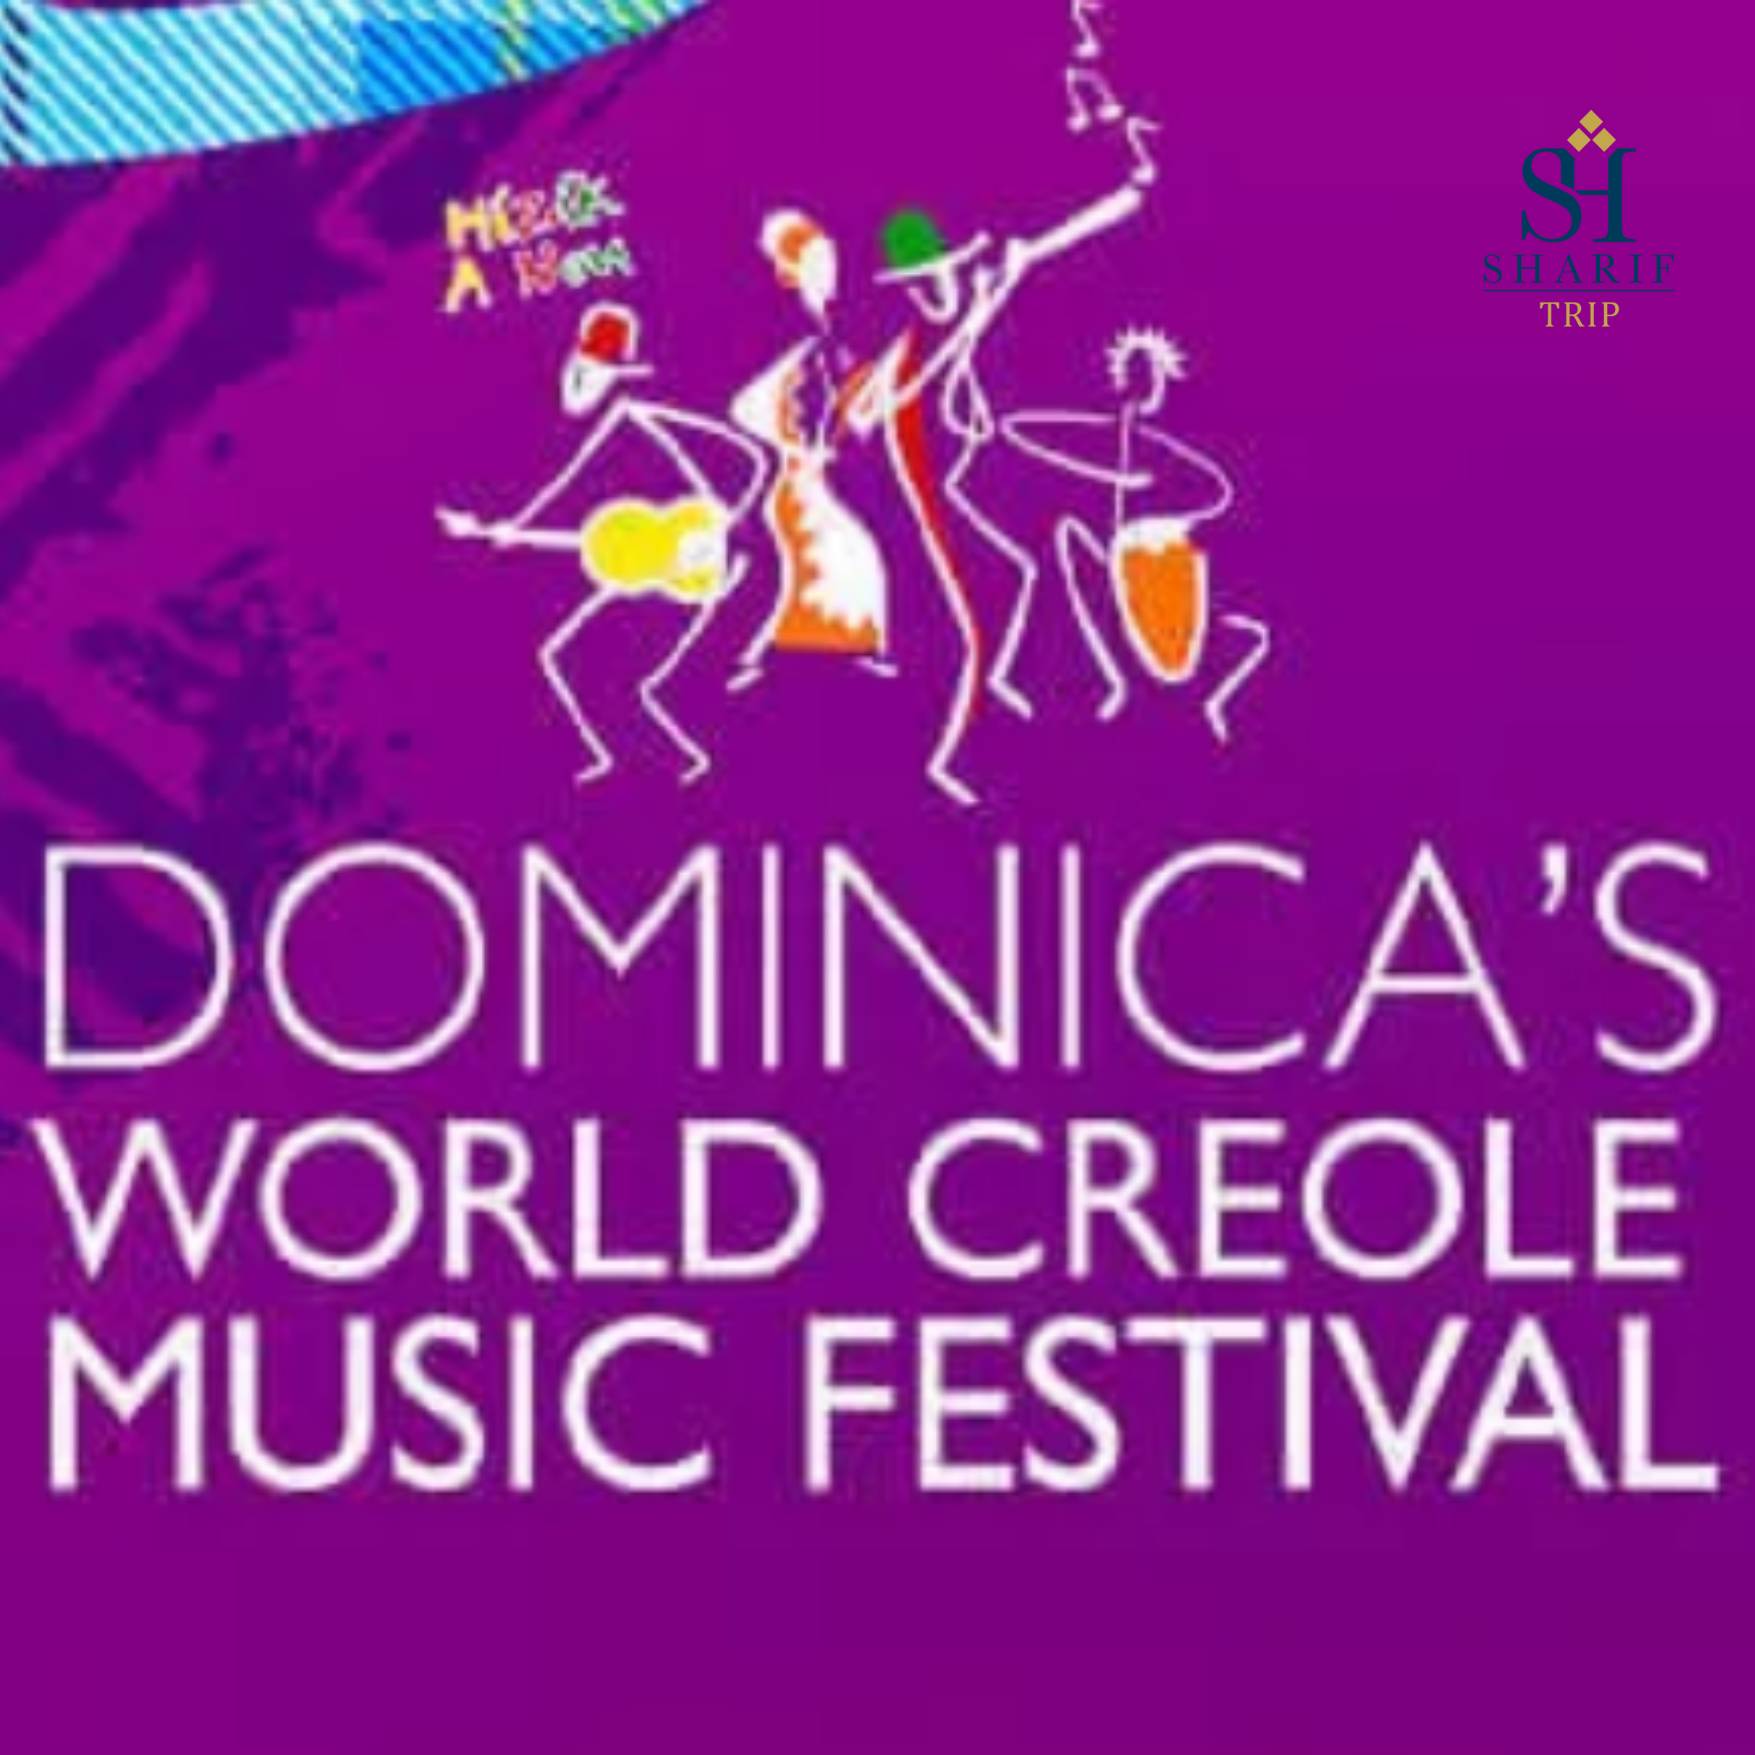 ارائه بلیط رایگان برای جشنواره جهانی موسیقی کریول دومینیکا